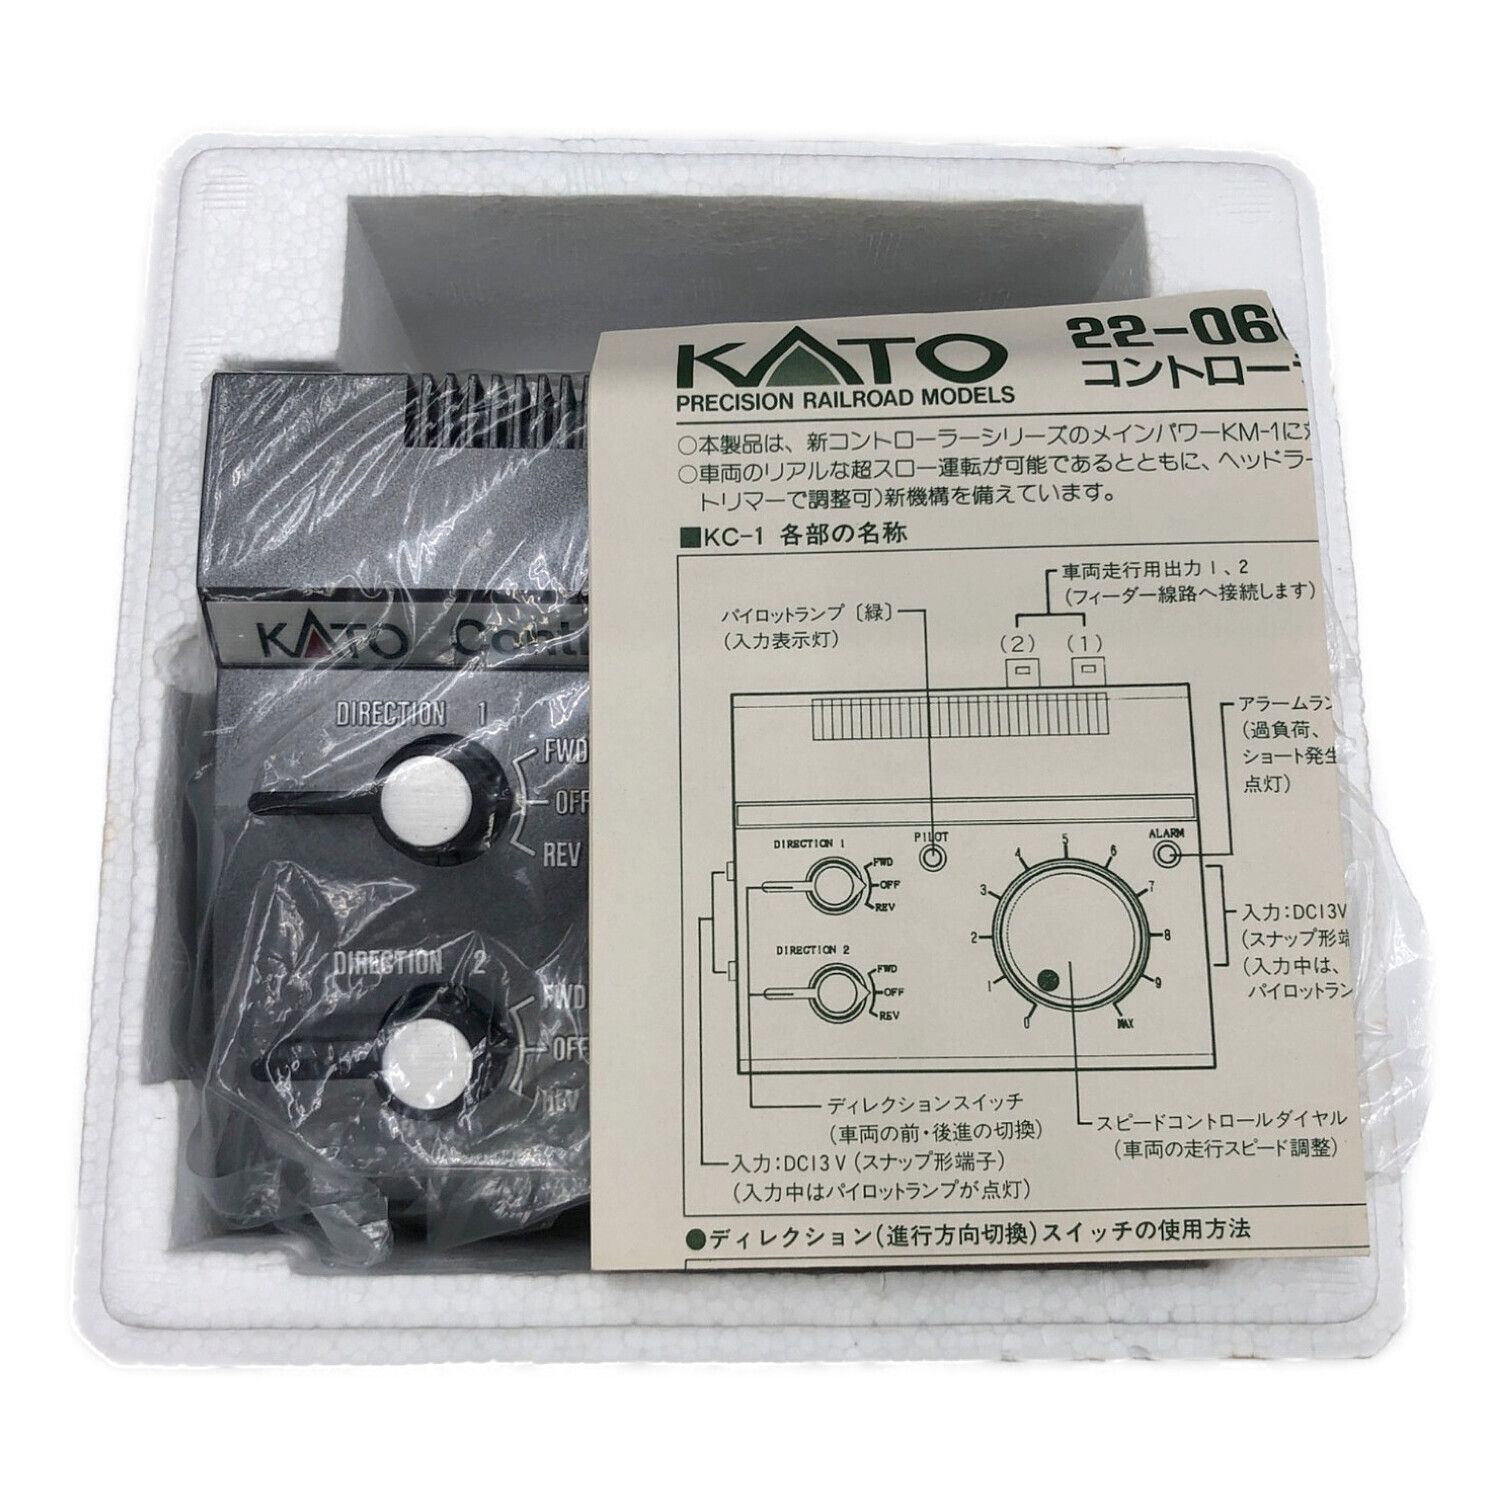 KATO メインパワーKM-1 22-080 ＆ コントローラーKC-1 22-060